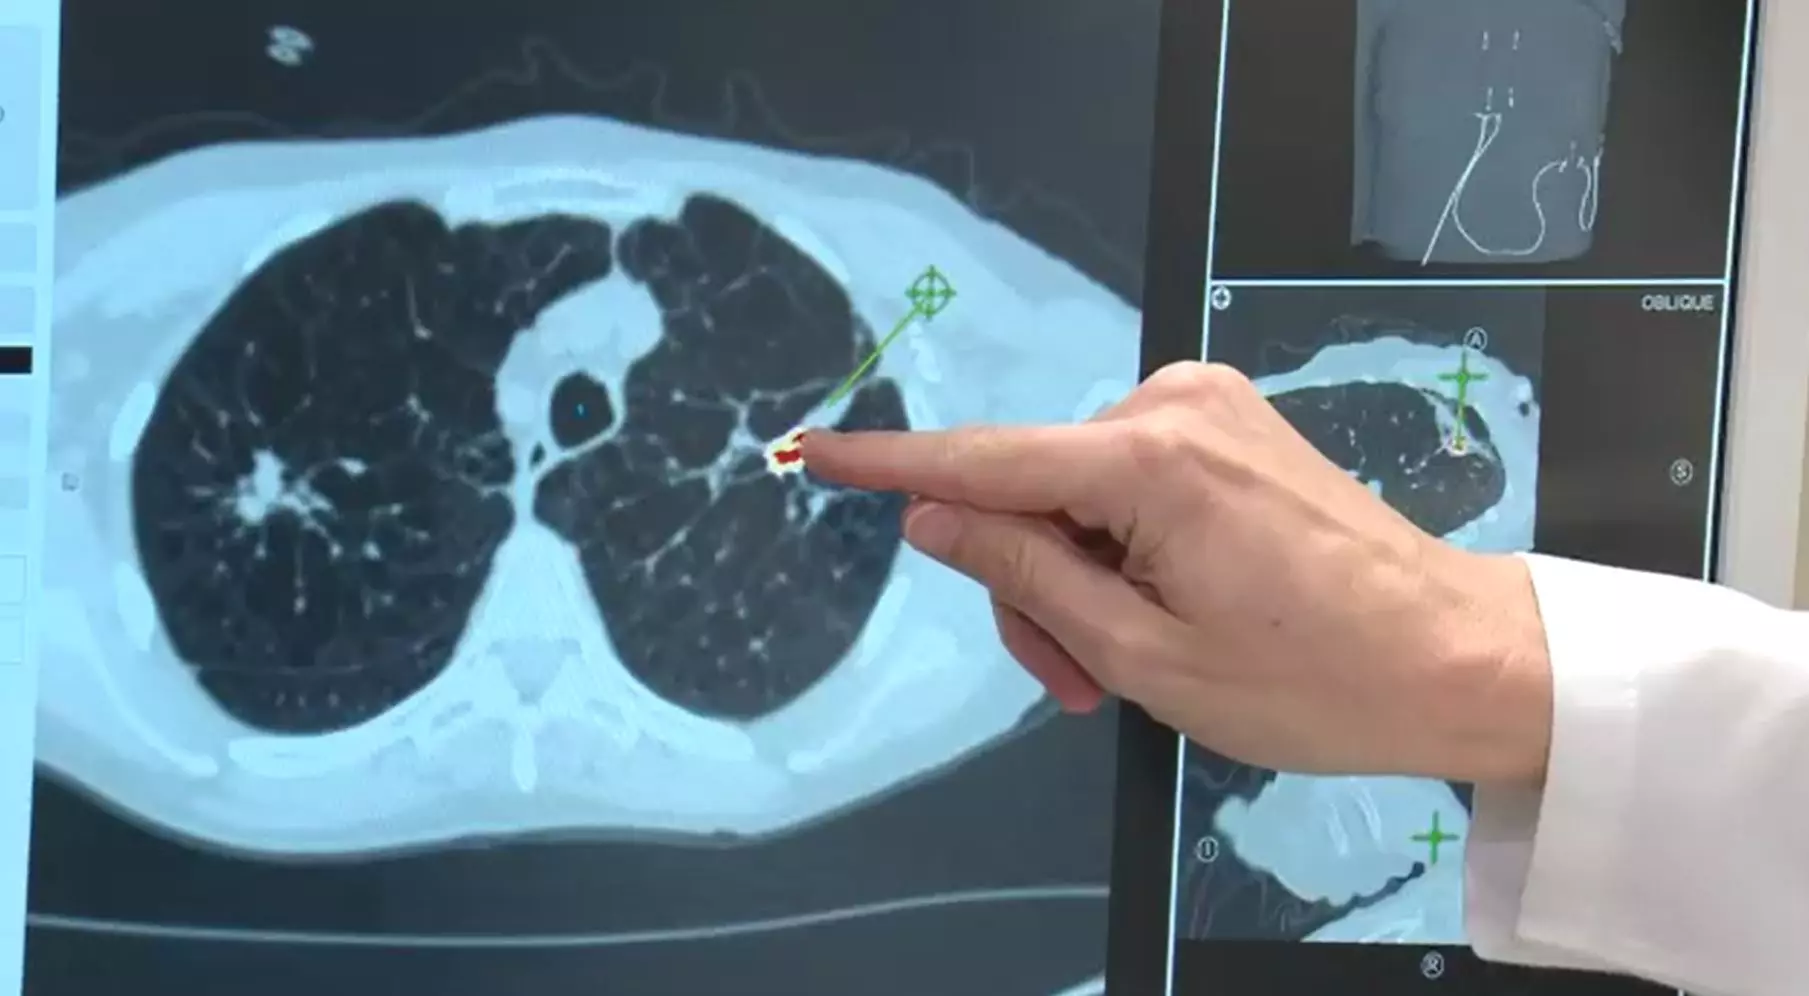 Ung thư phổi - Bệnh lý phổ biến và nguy hiểm. TÌM HIỂU NGAY!